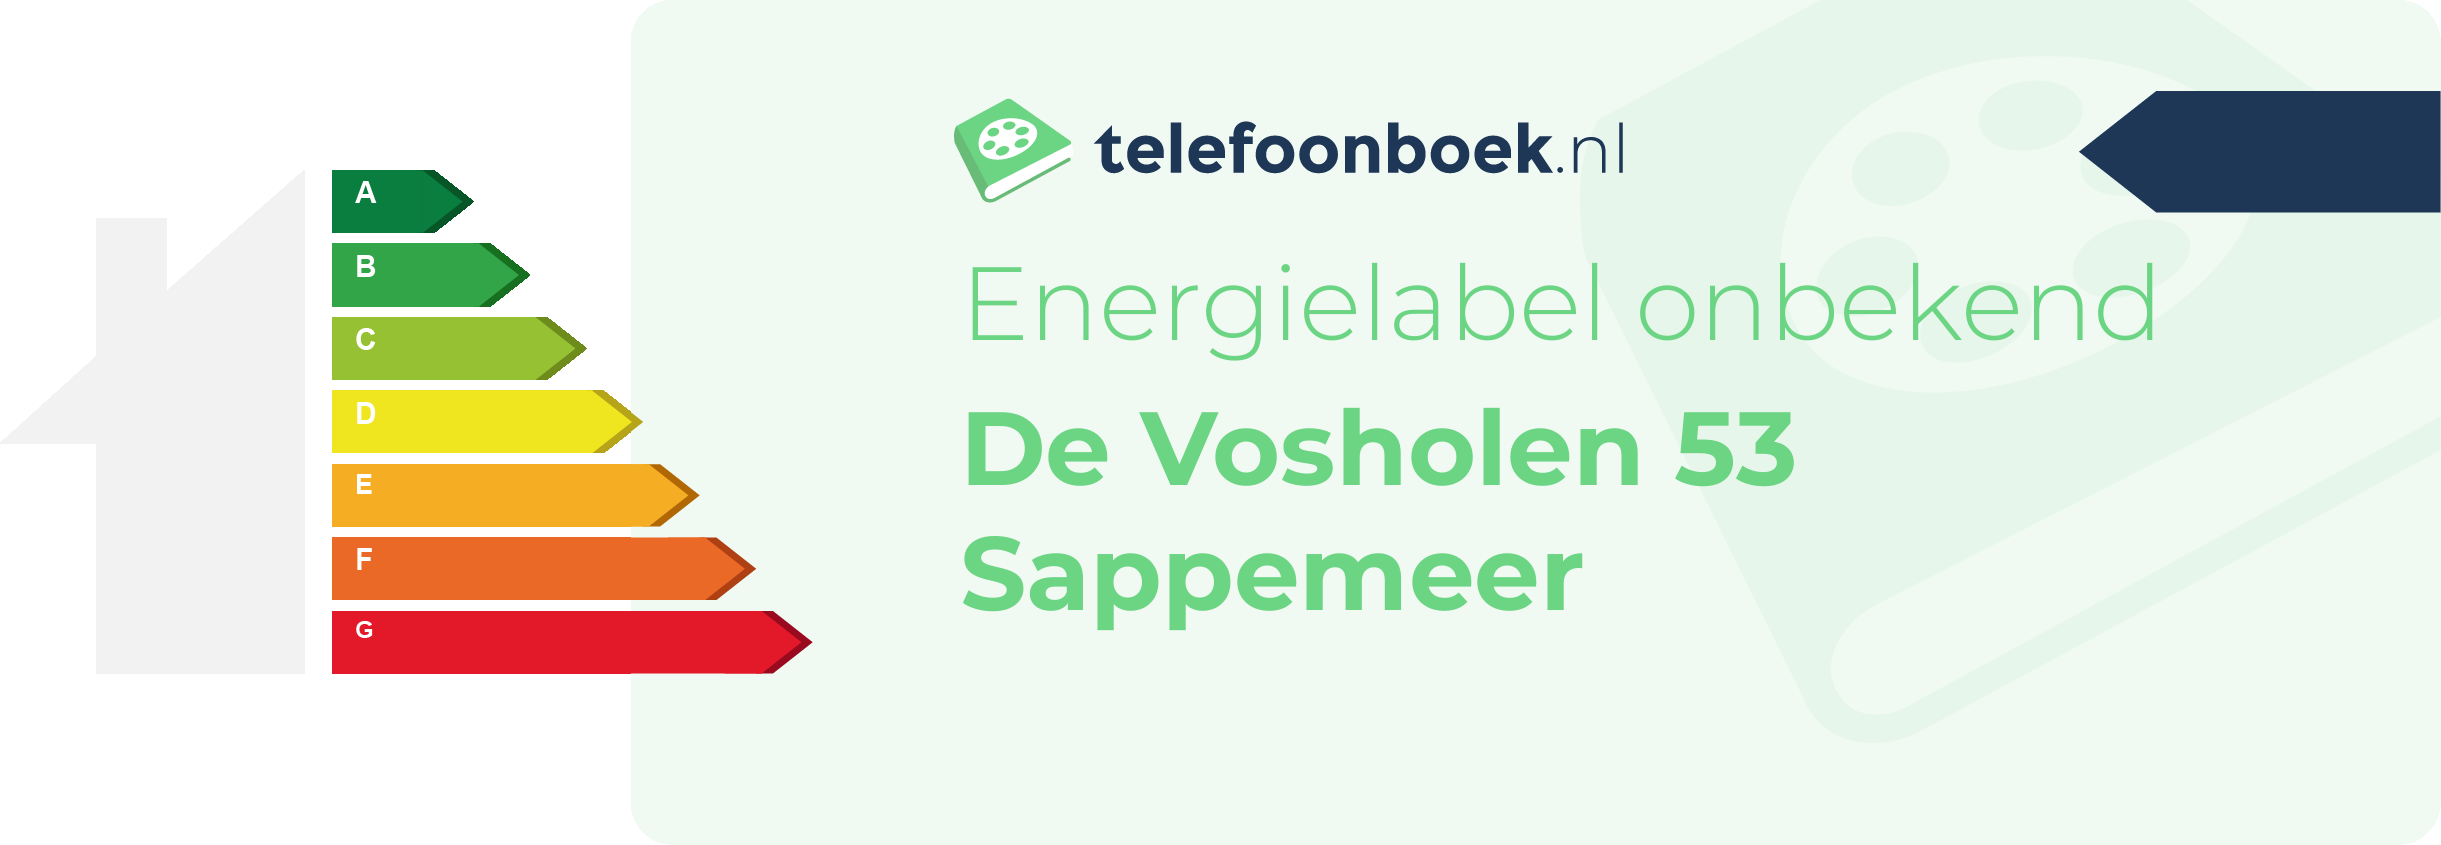 Energielabel De Vosholen 53 Sappemeer